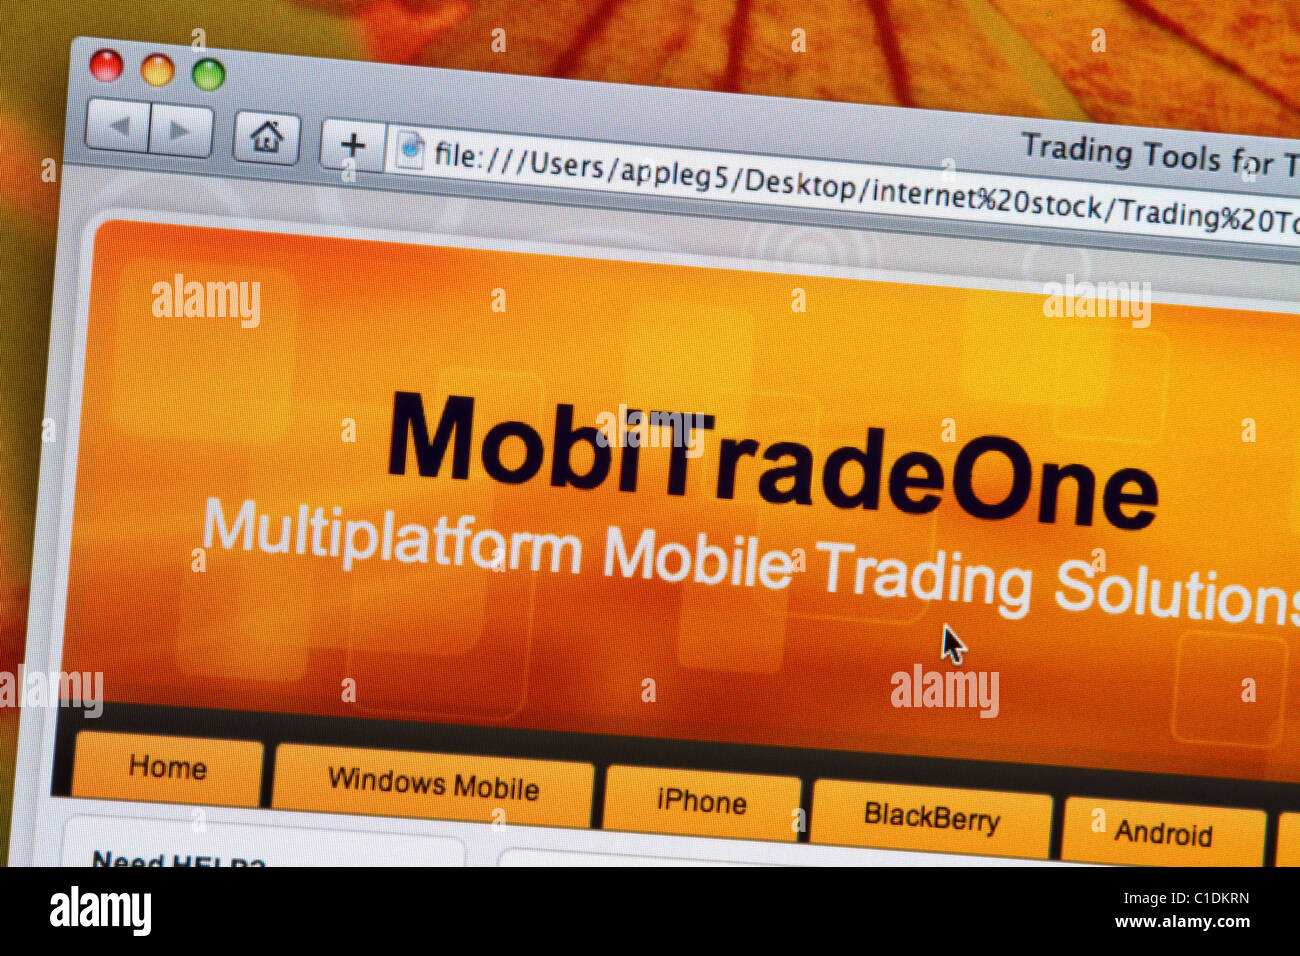 Commercio mobile di un sito web per internet stock trading. Foto Stock